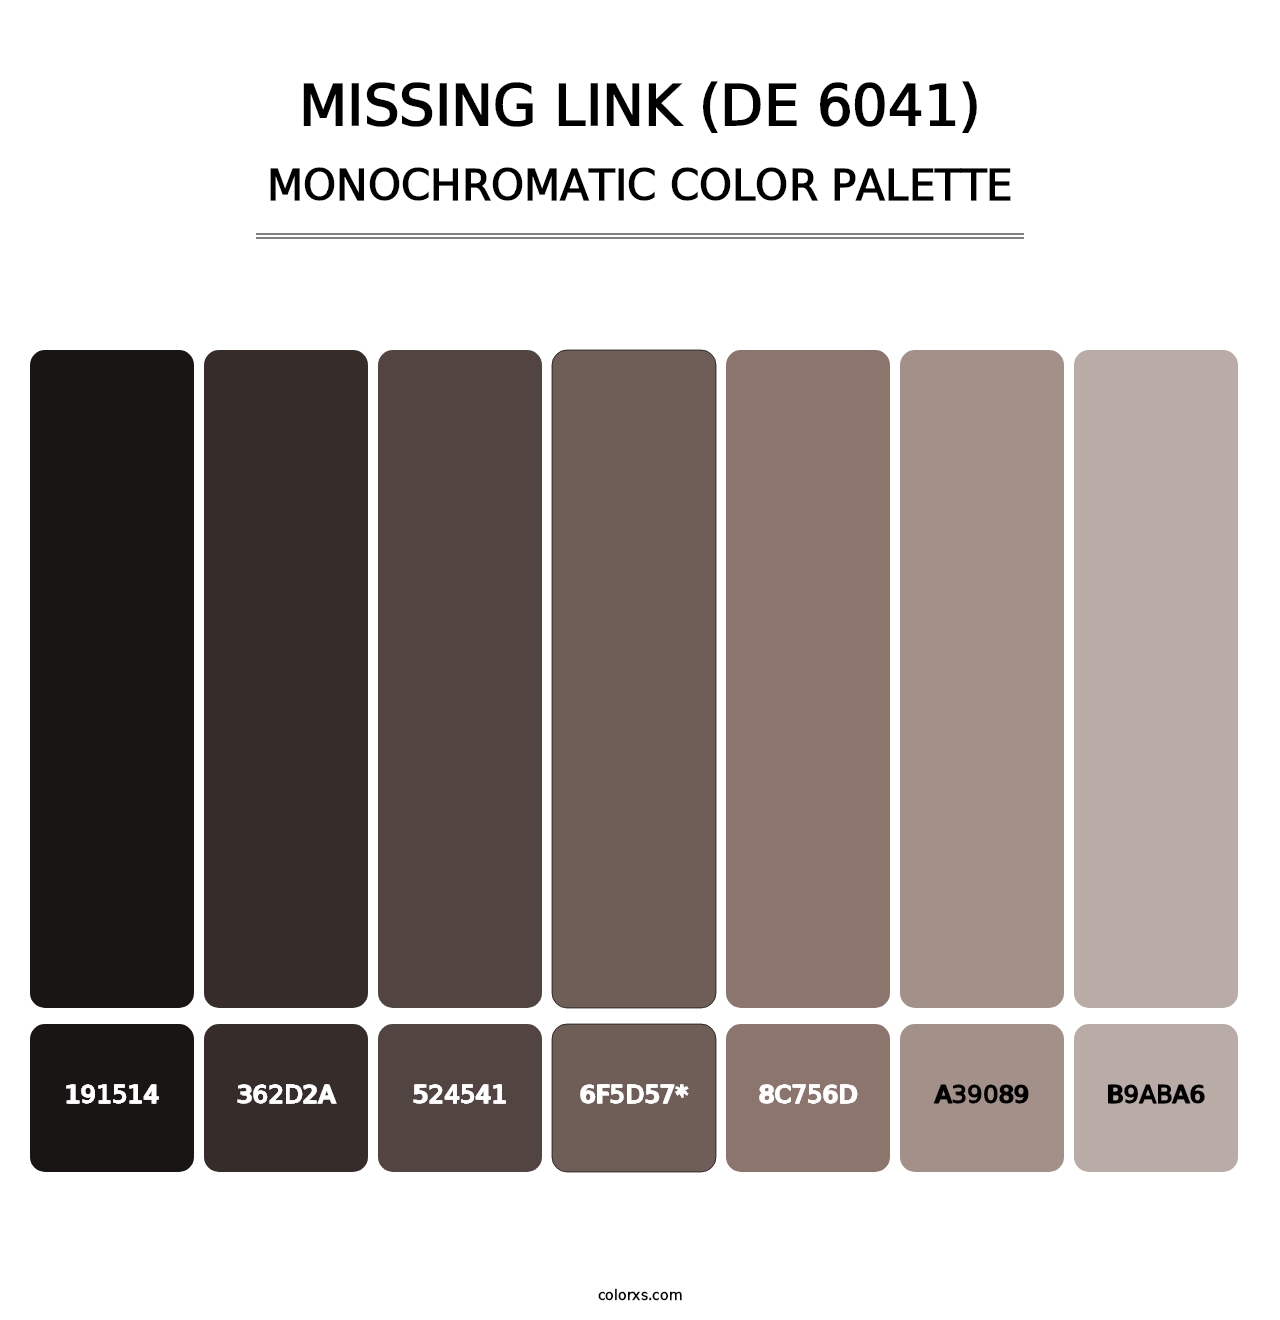 Missing Link (DE 6041) - Monochromatic Color Palette